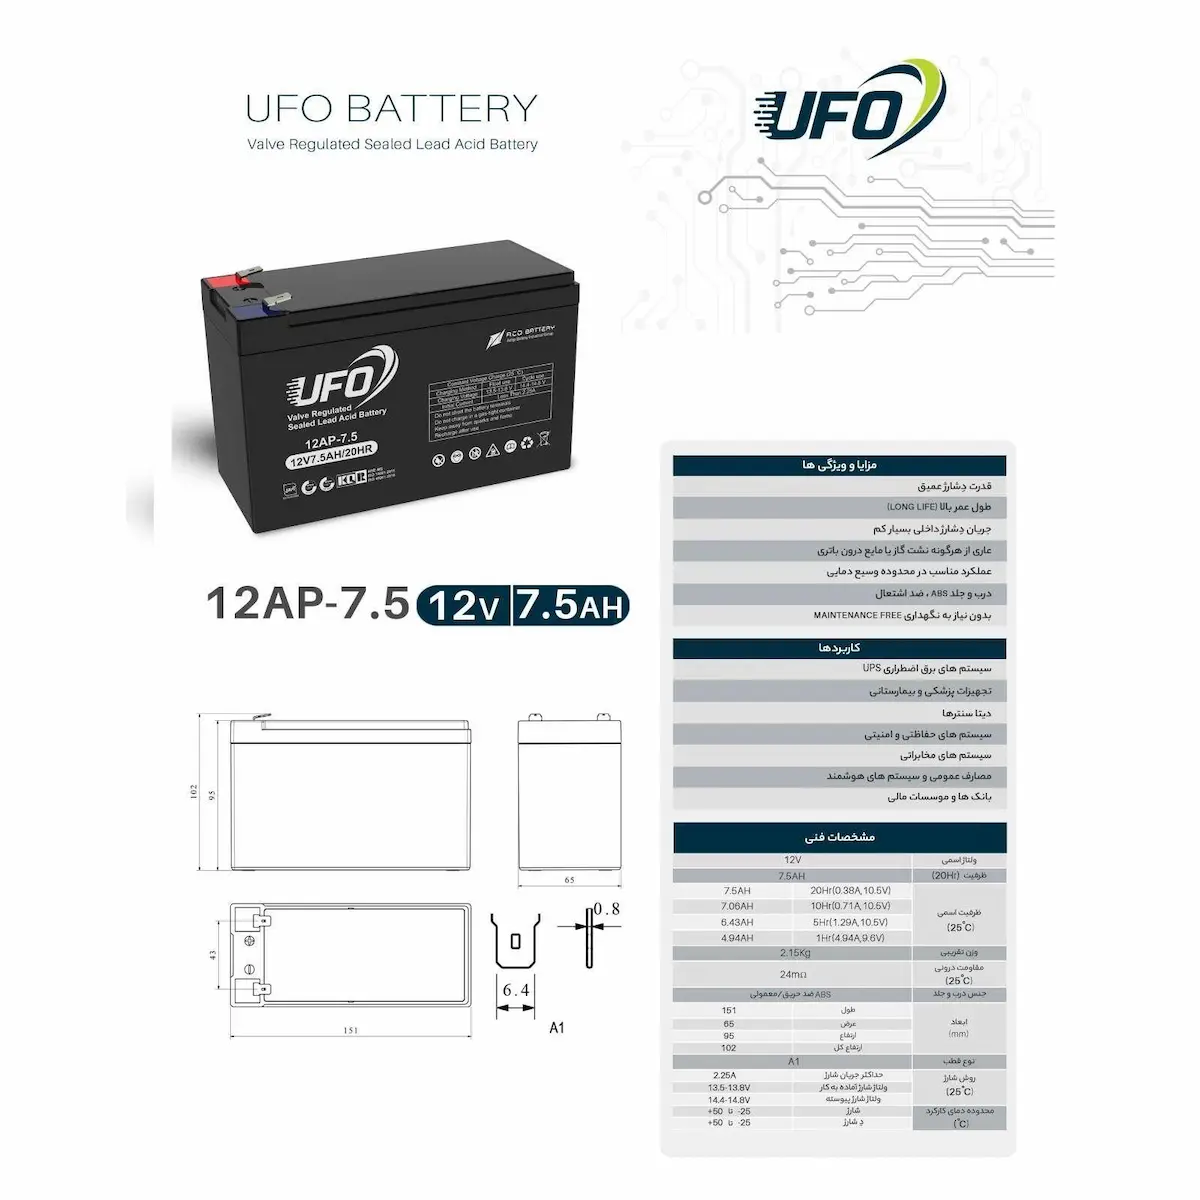 ufo 7.5 AH battery